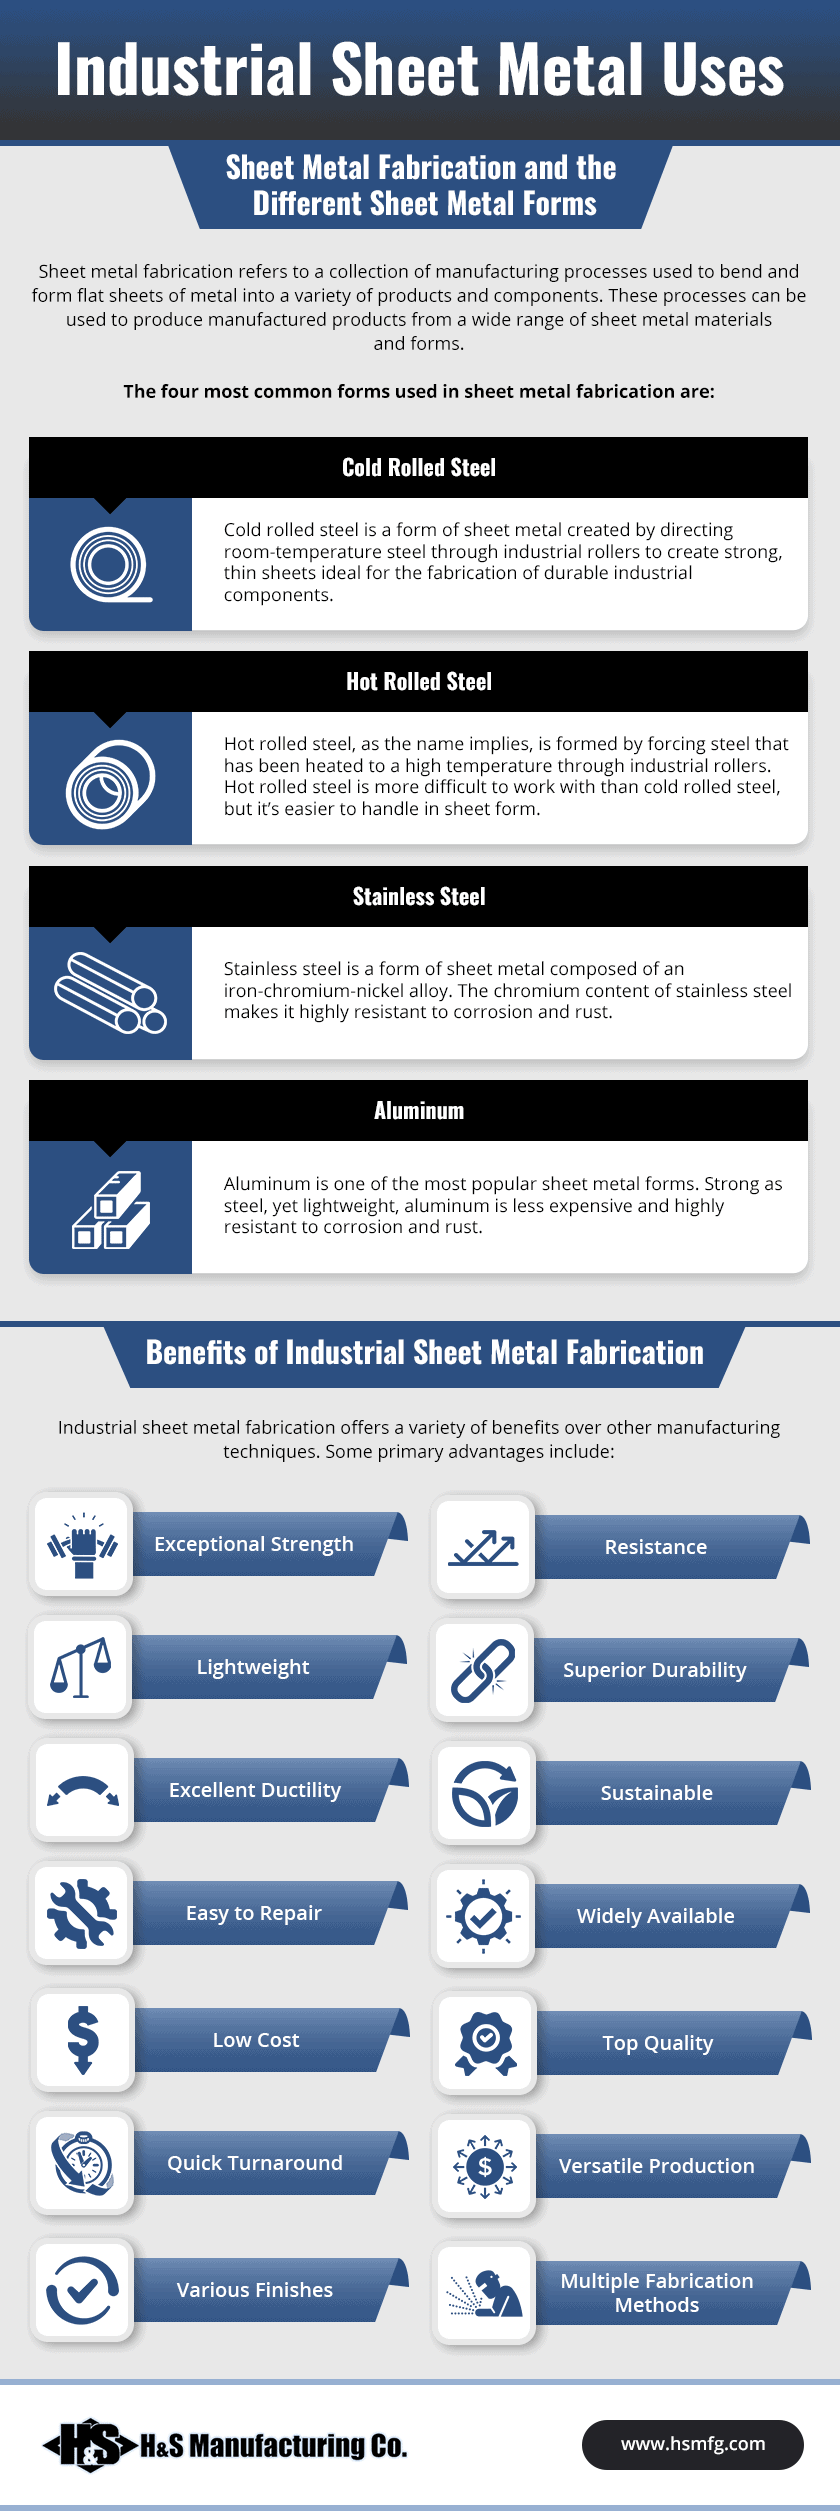 Industrial Sheet Metal Uses